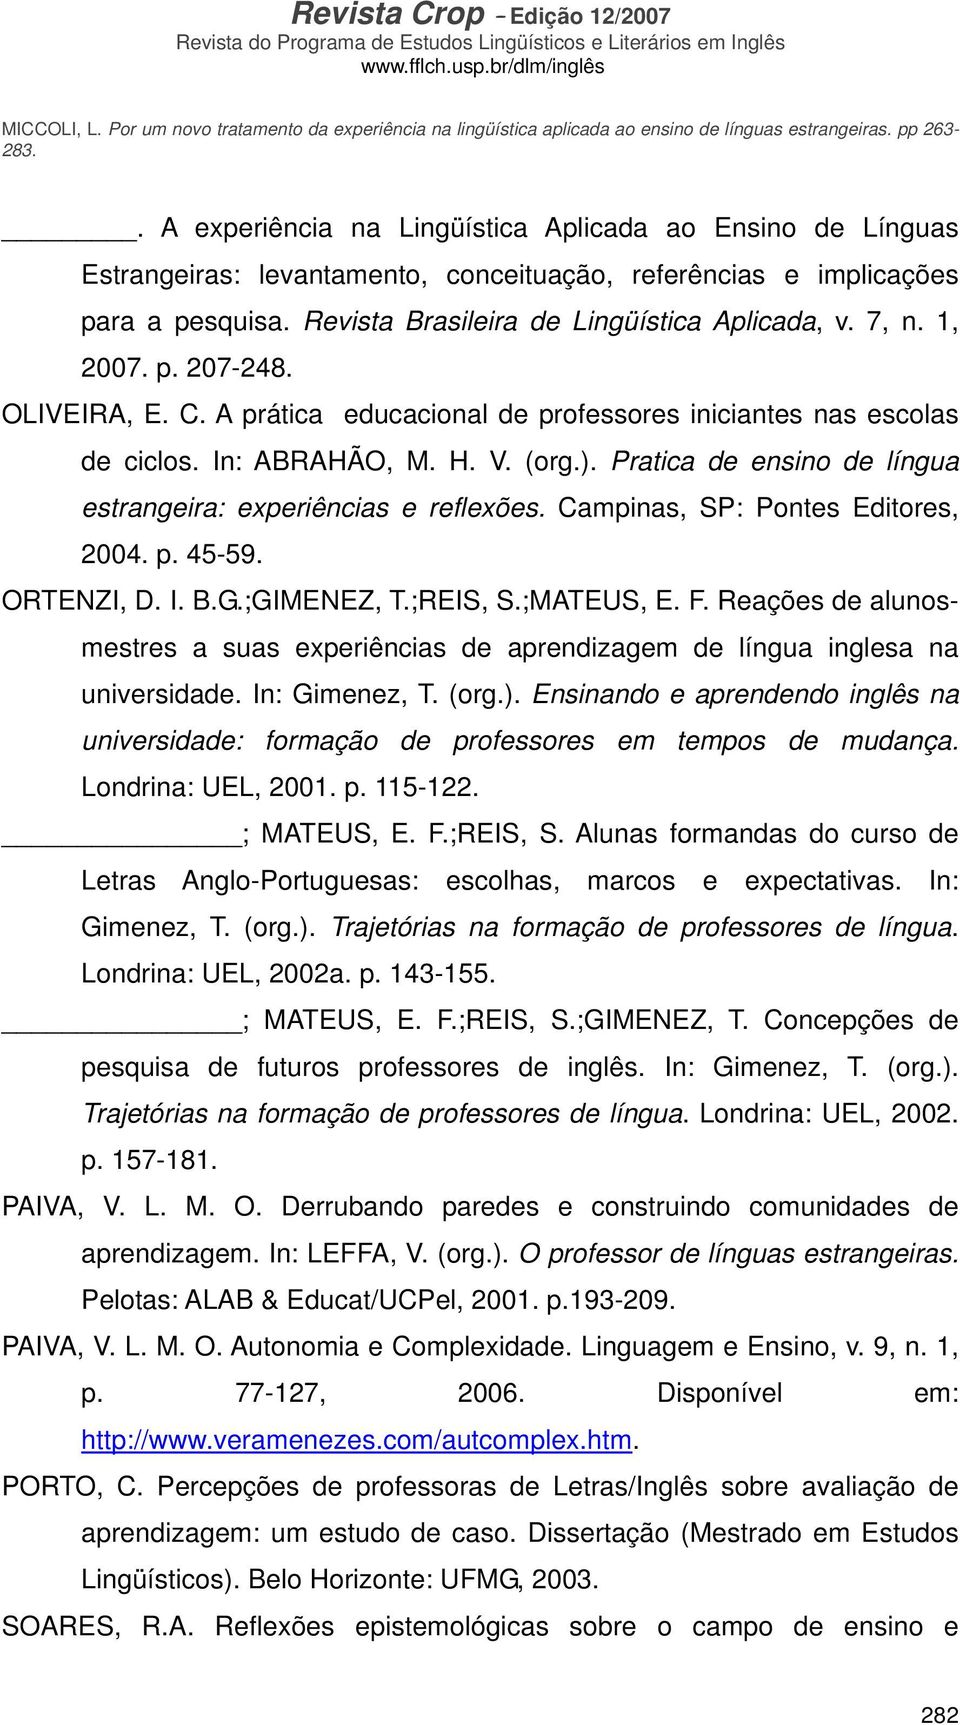 Pratica de ensino de língua estrangeira: experiências e reflexões. Campinas, SP: Pontes Editores, 2004. p. 45-59. ORTENZI, D. I. B.G.;GIMENEZ, T.;REIS, S.;MATEUS, E. F.